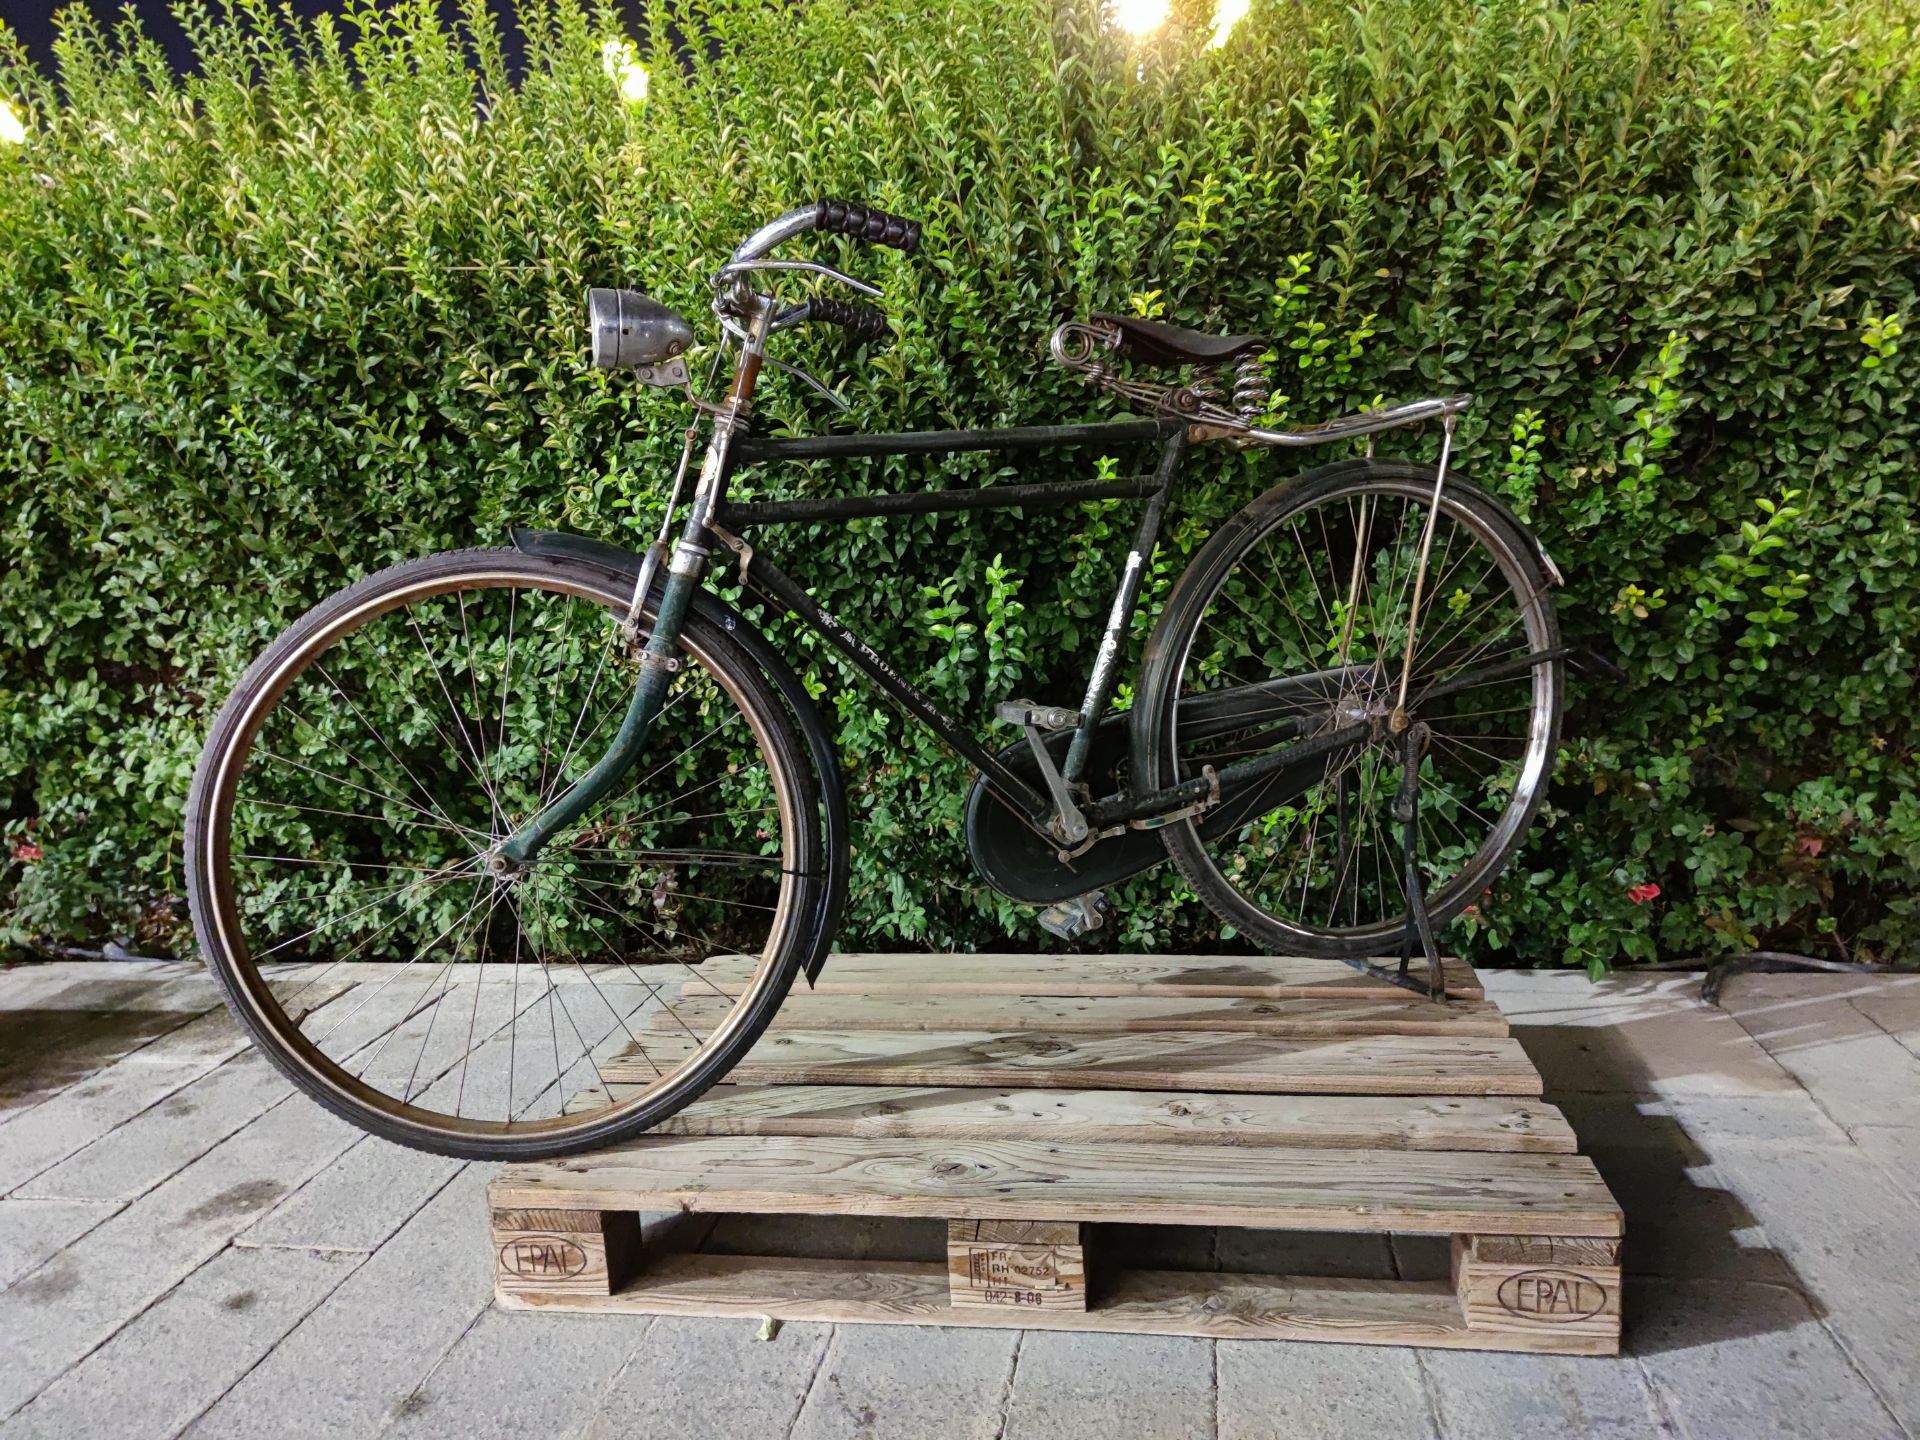 نمونه عکس 1X دوربین اصلی شیائومی می 10 در محیط کم نور - دوچرخه قدیمی باغ کتاب